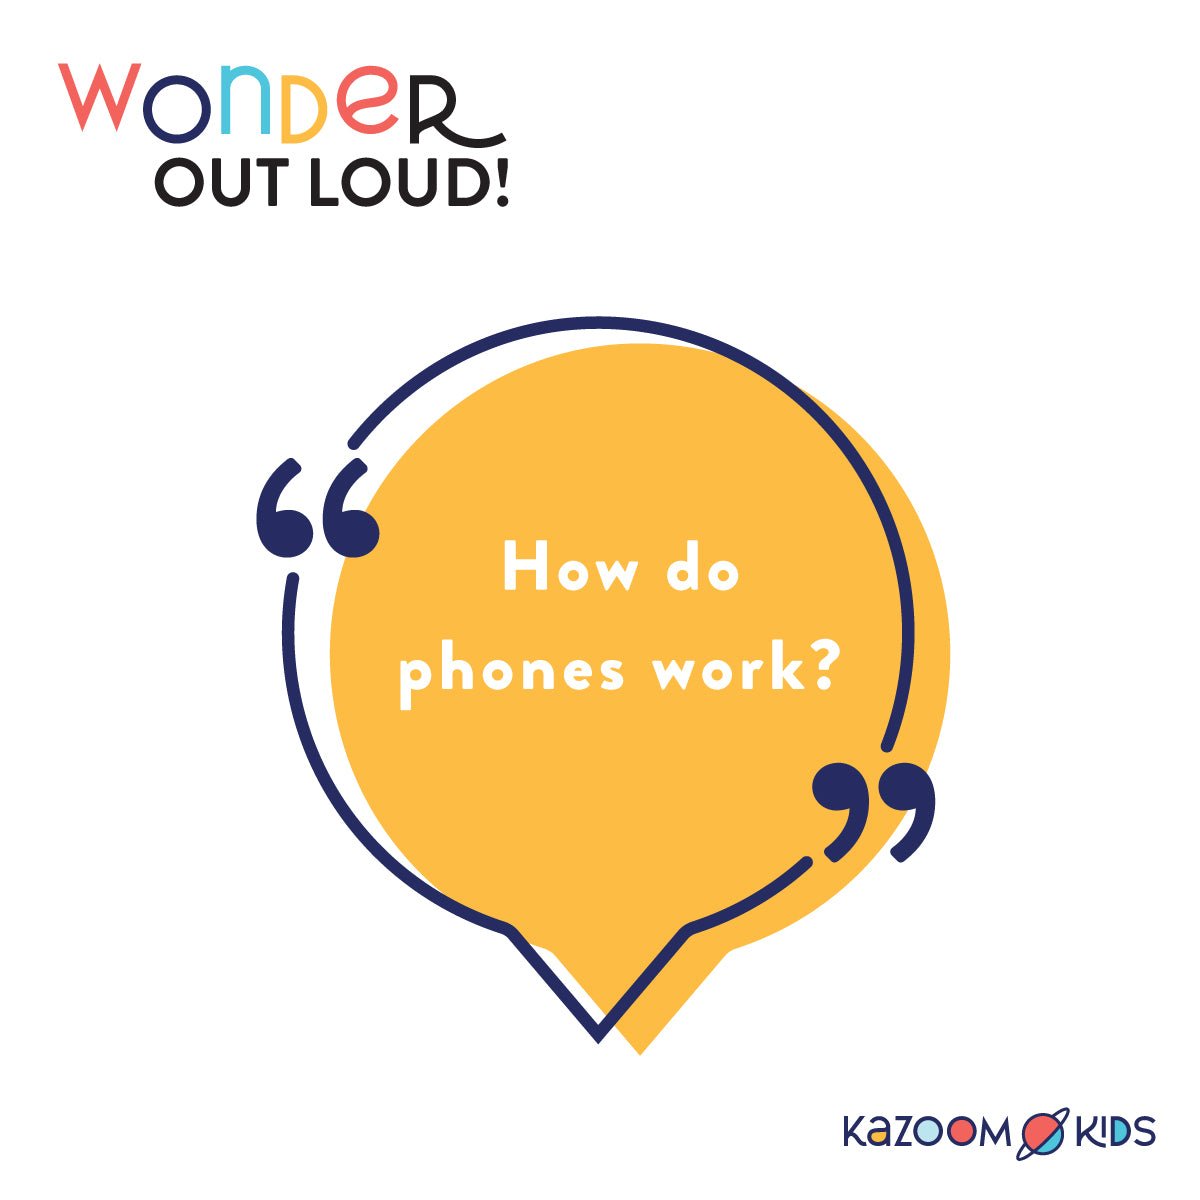 How do phones work?